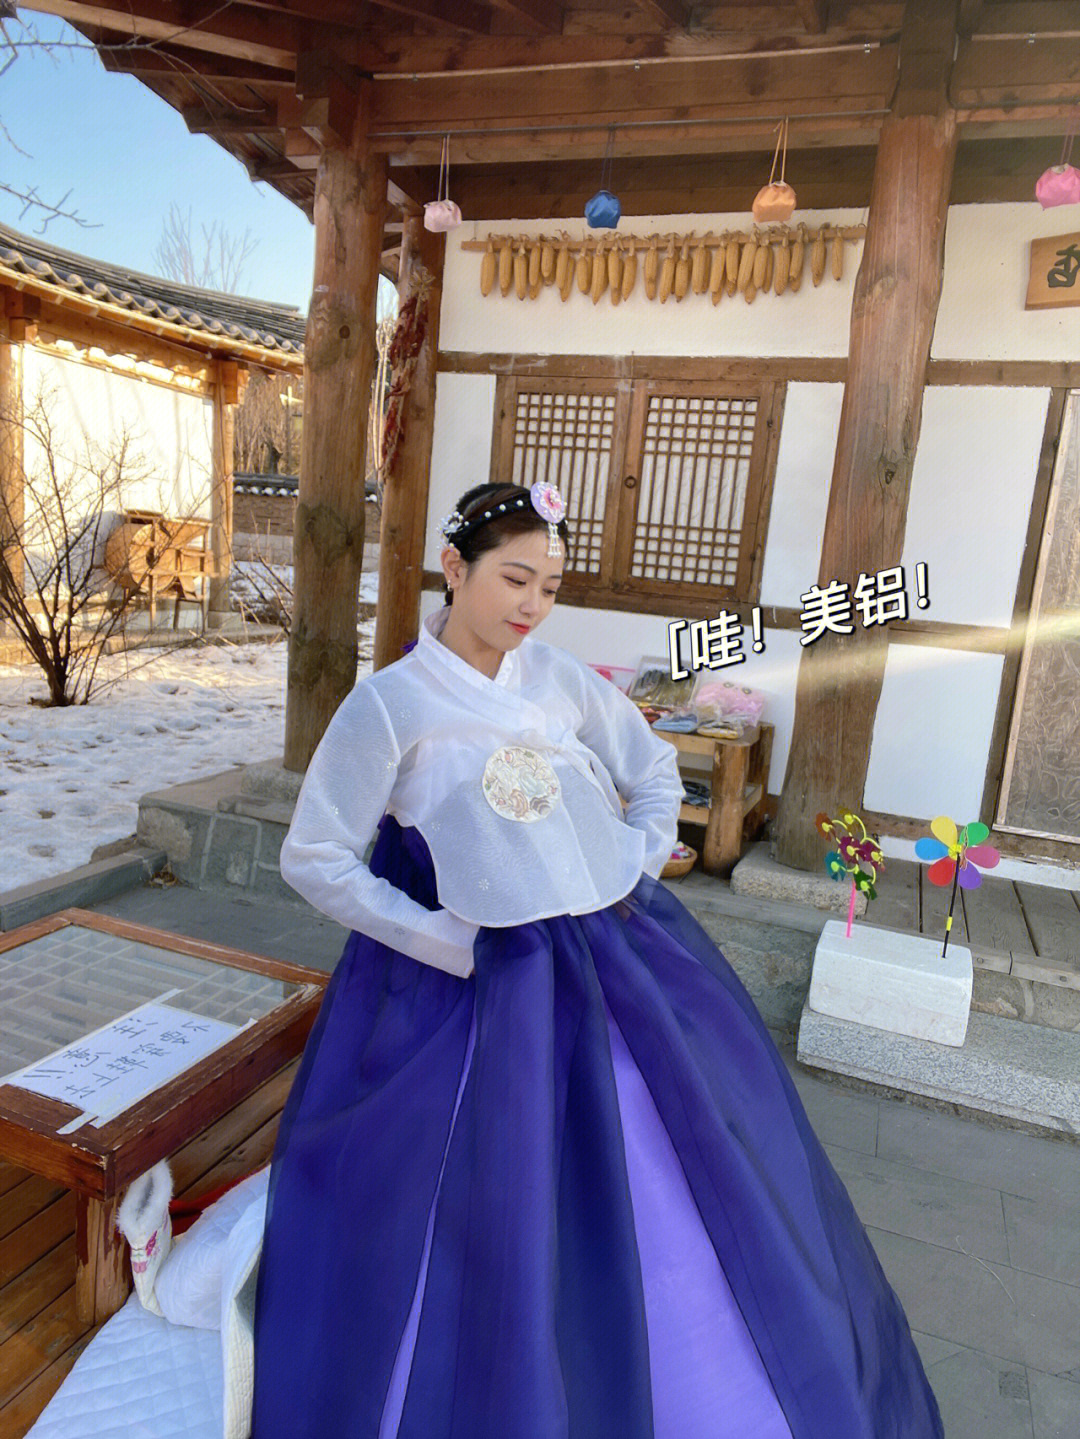 延吉旅游民俗园体验朝鲜族服饰要坚强